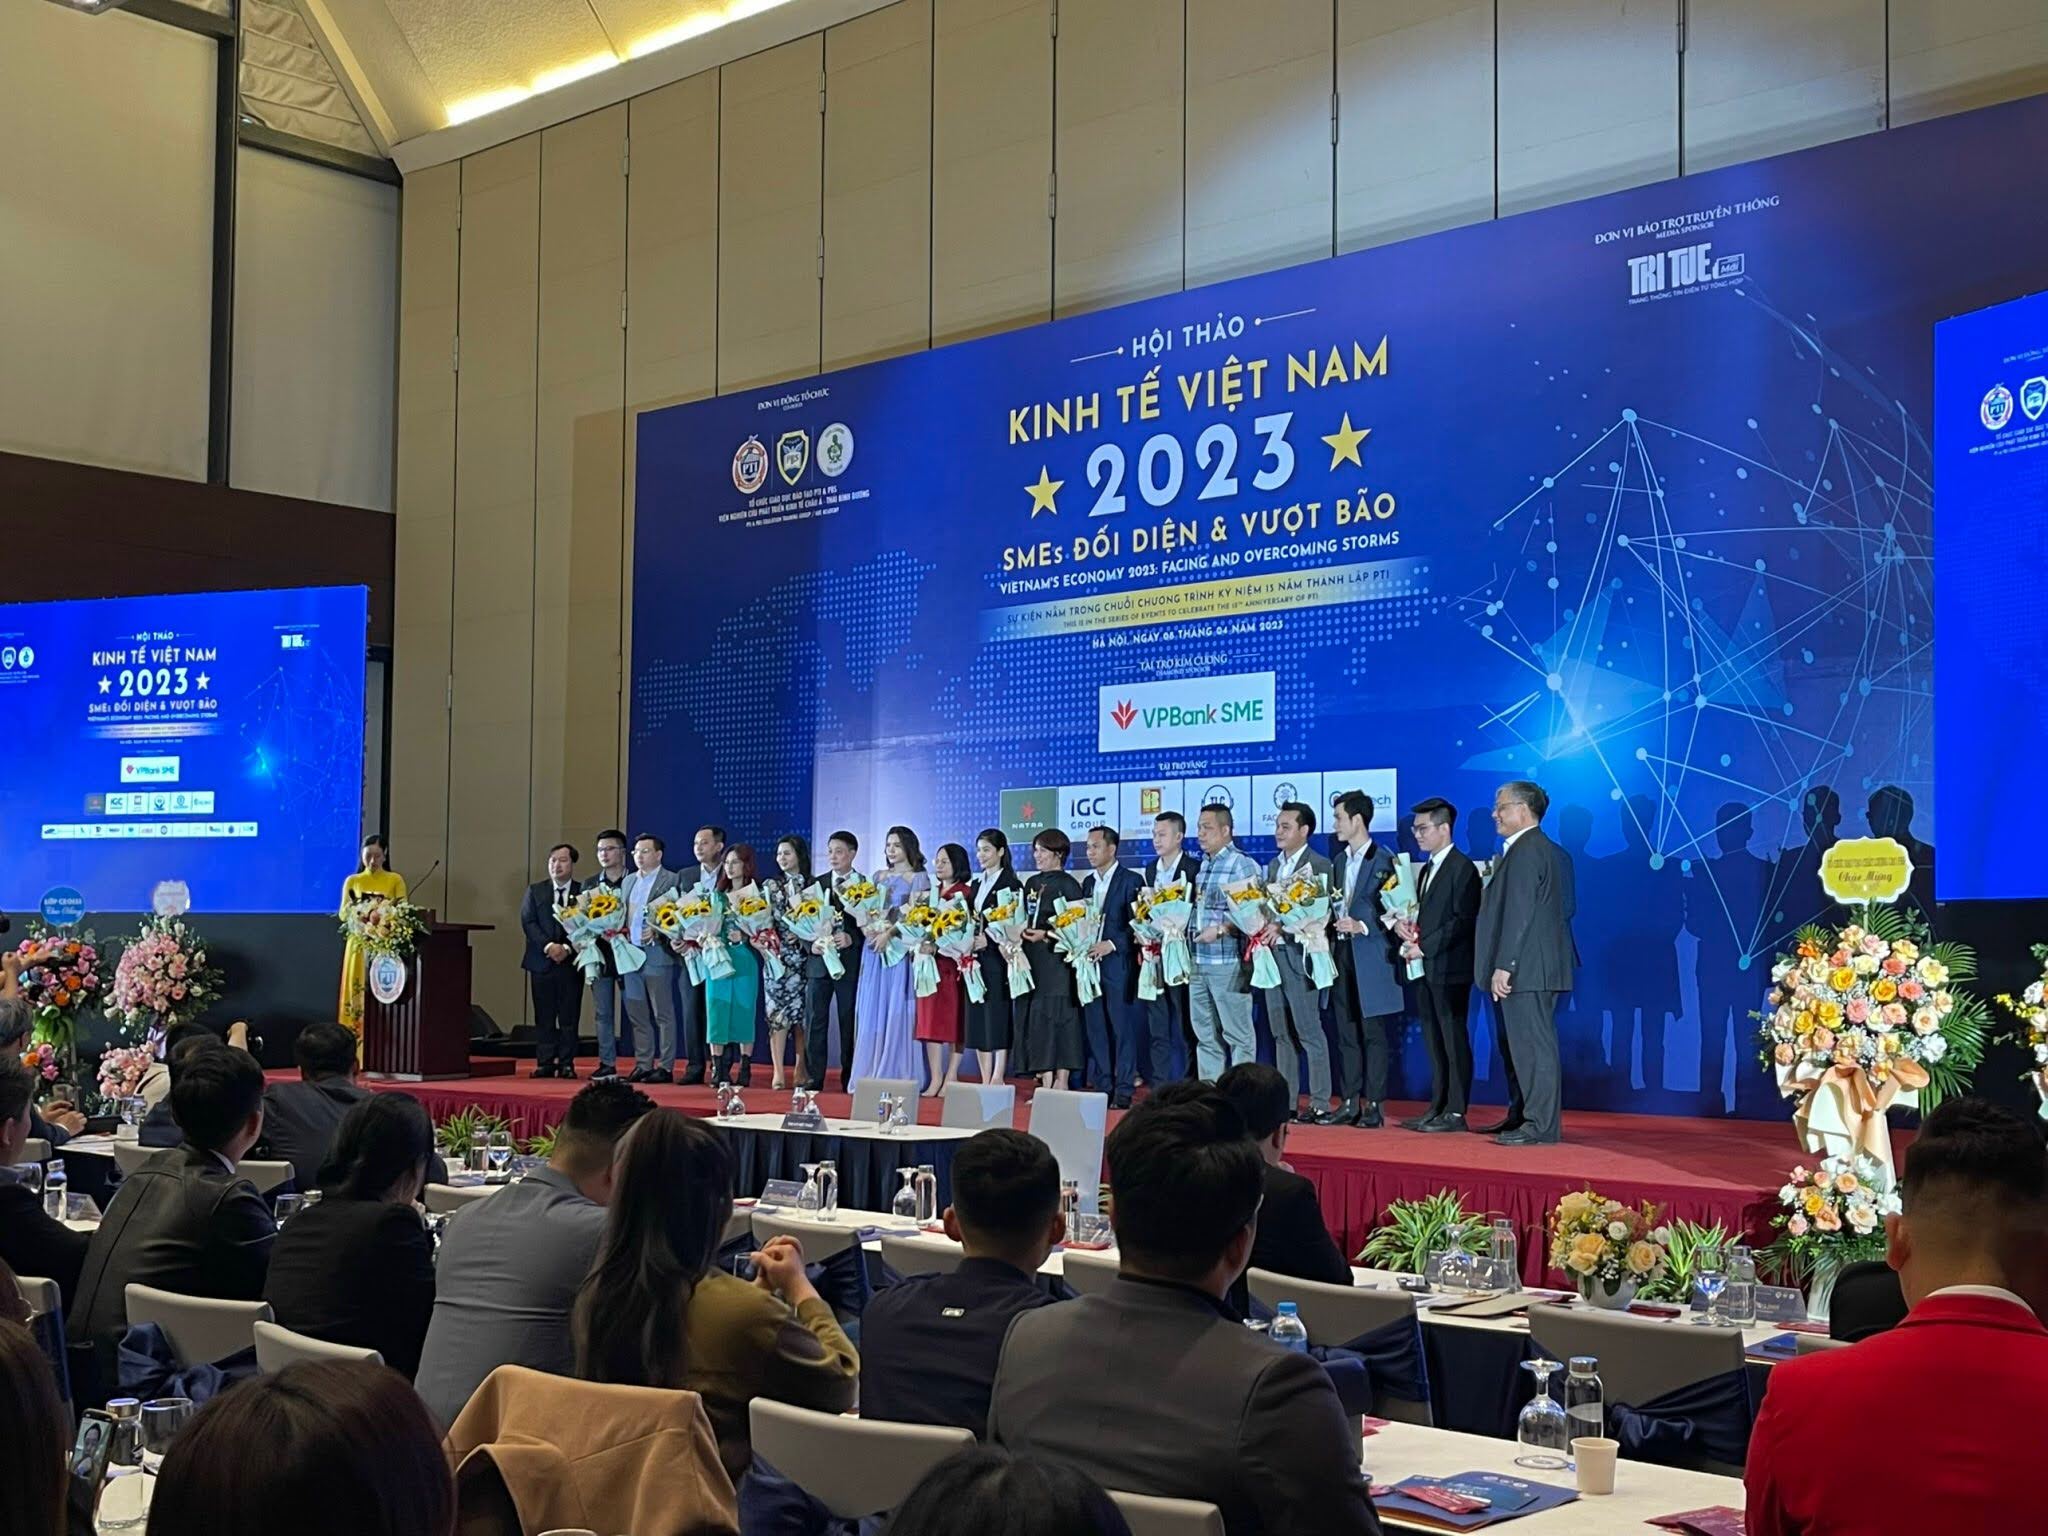 Thang máy An Bình – Nhà tài trợ bạc Hội thảo “Kinh tế Việt Nam 2023- SMES Đối diện và vượt bão”